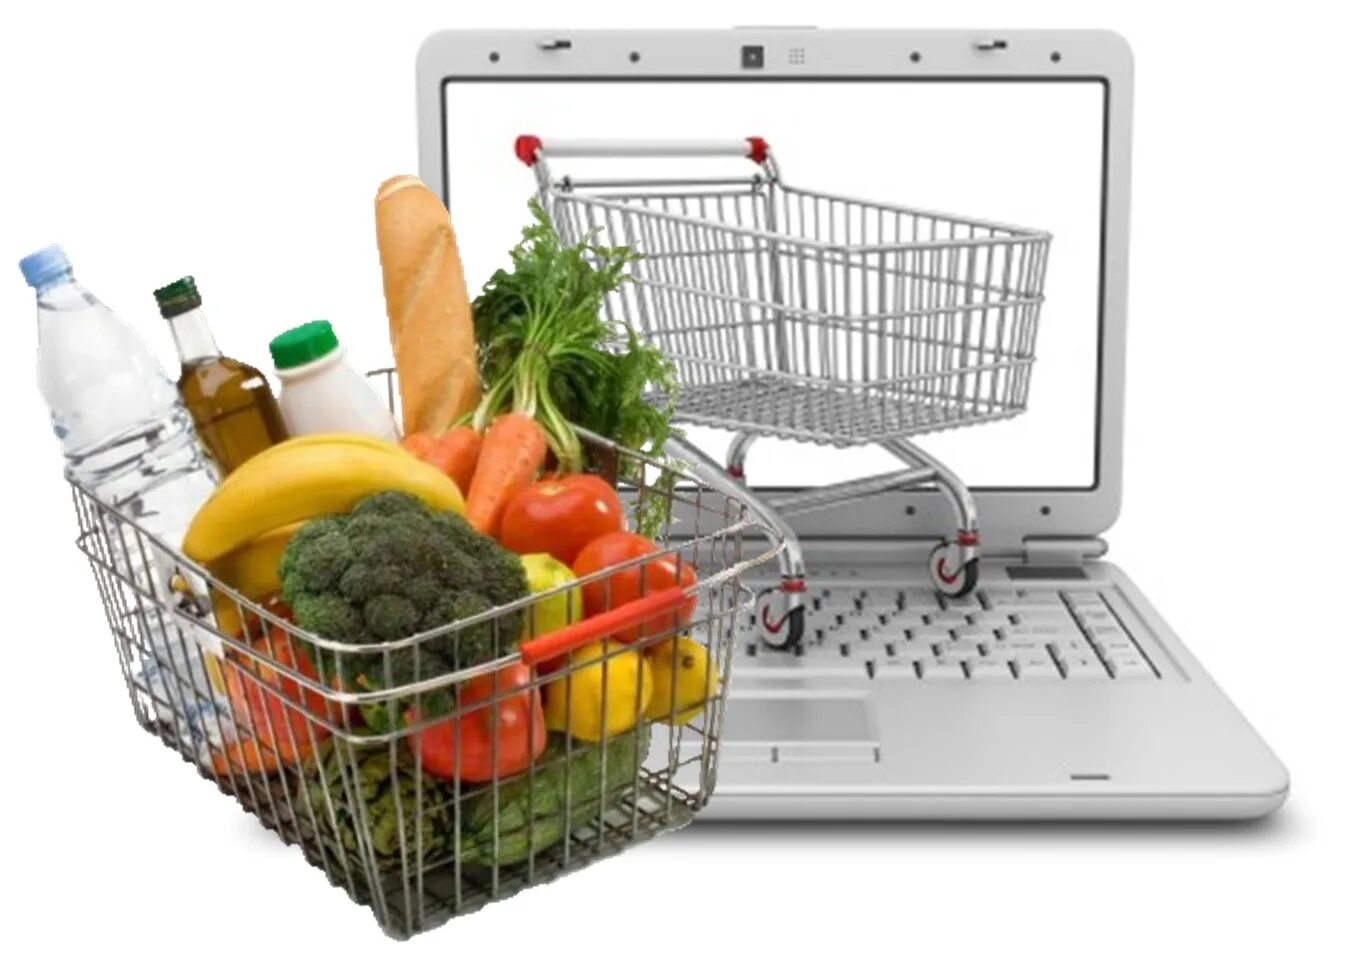 Интернет магазин продуктов. Продовольственные товары. Интернет магазин. Розничная торговля продовольственными товарами.